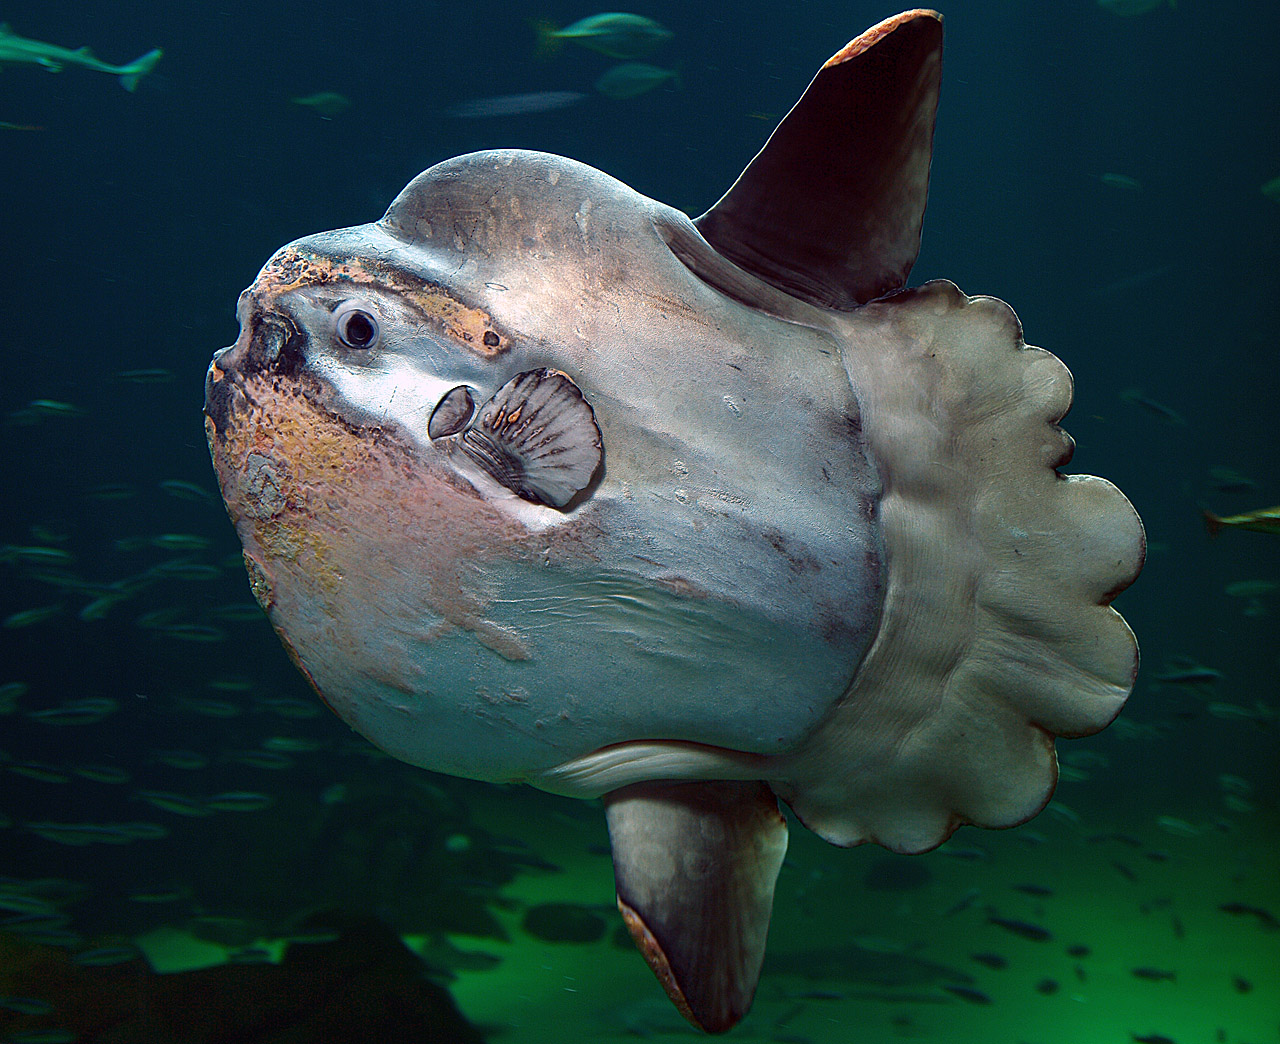 Lumpy sunfish